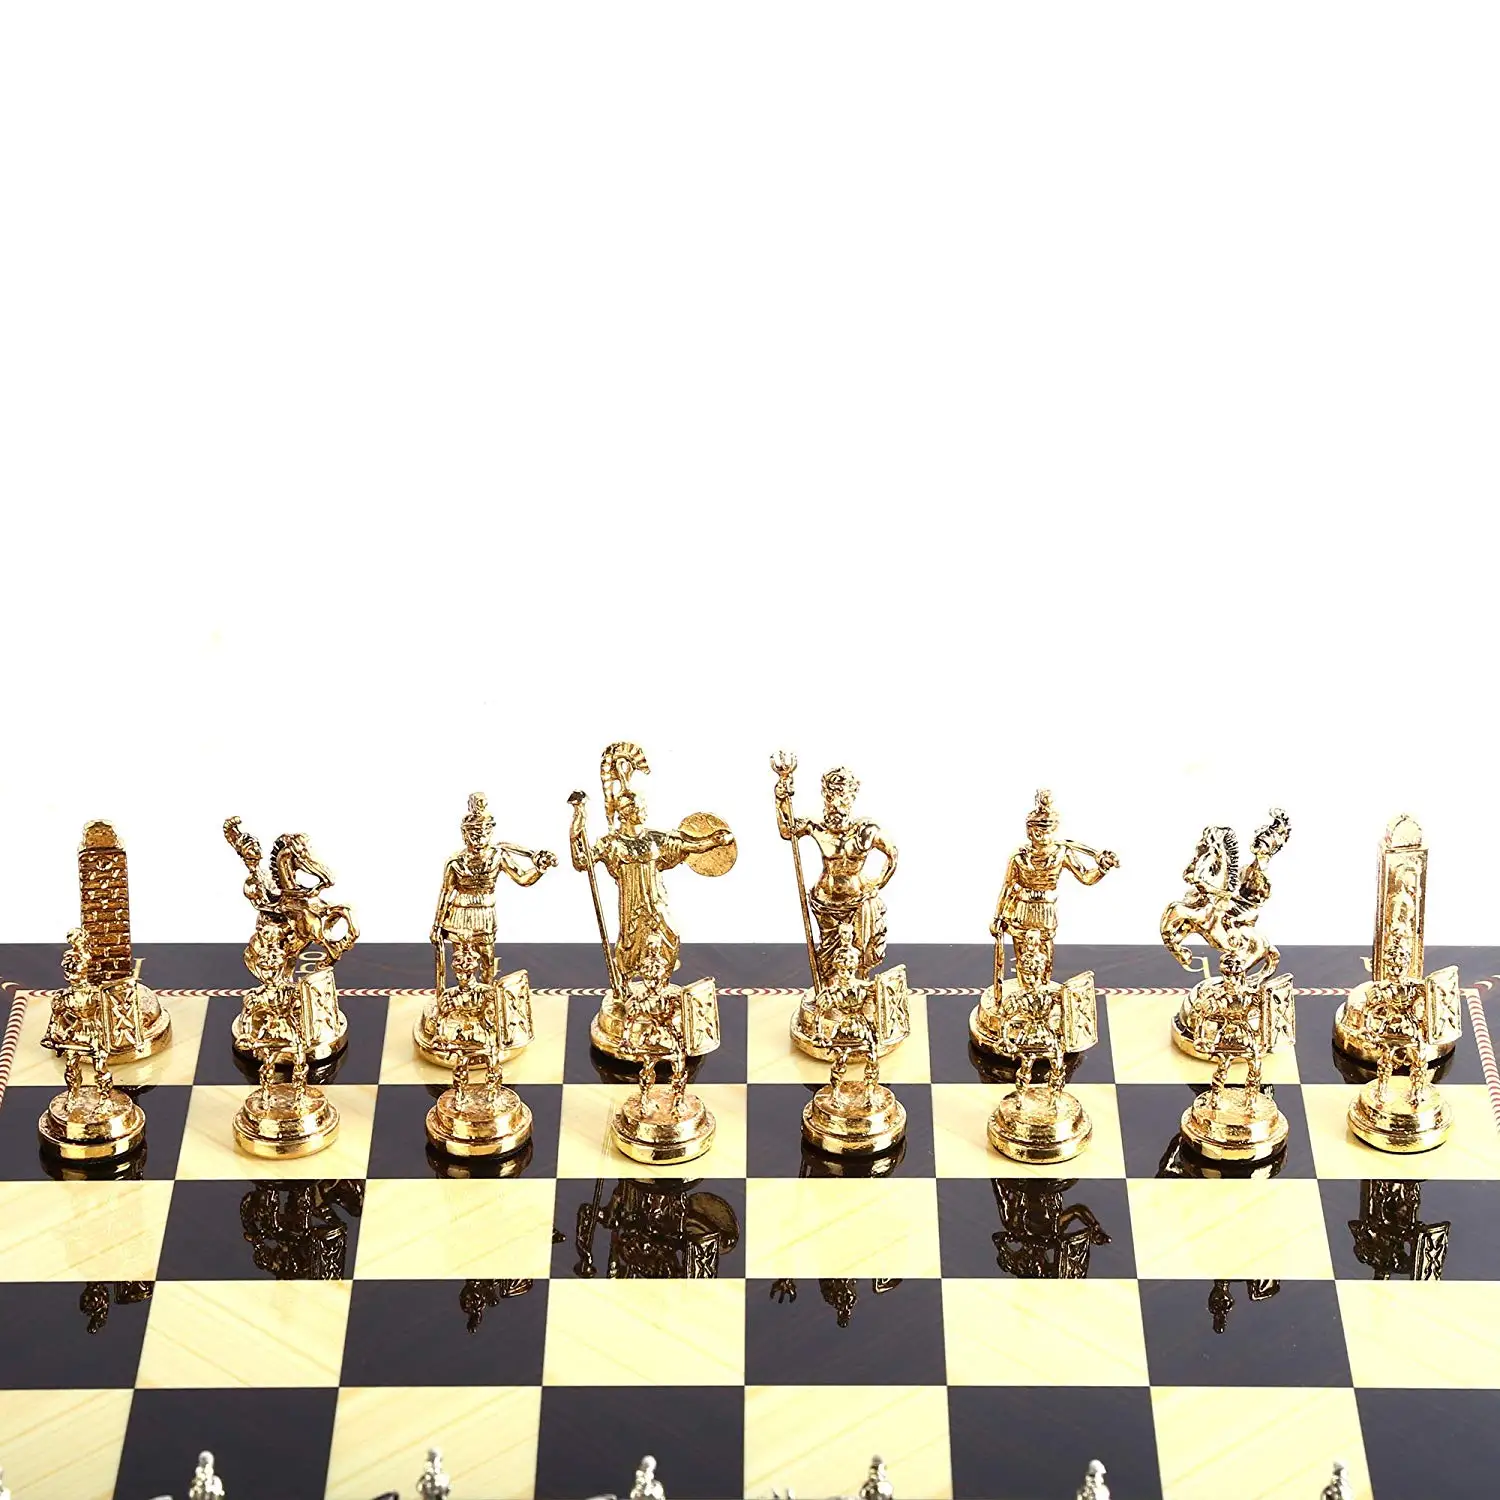 Только шахматные фигуры) римские фигурки металлические шахматные фигуры среднего размера King 7 см(доска в комплект не входит